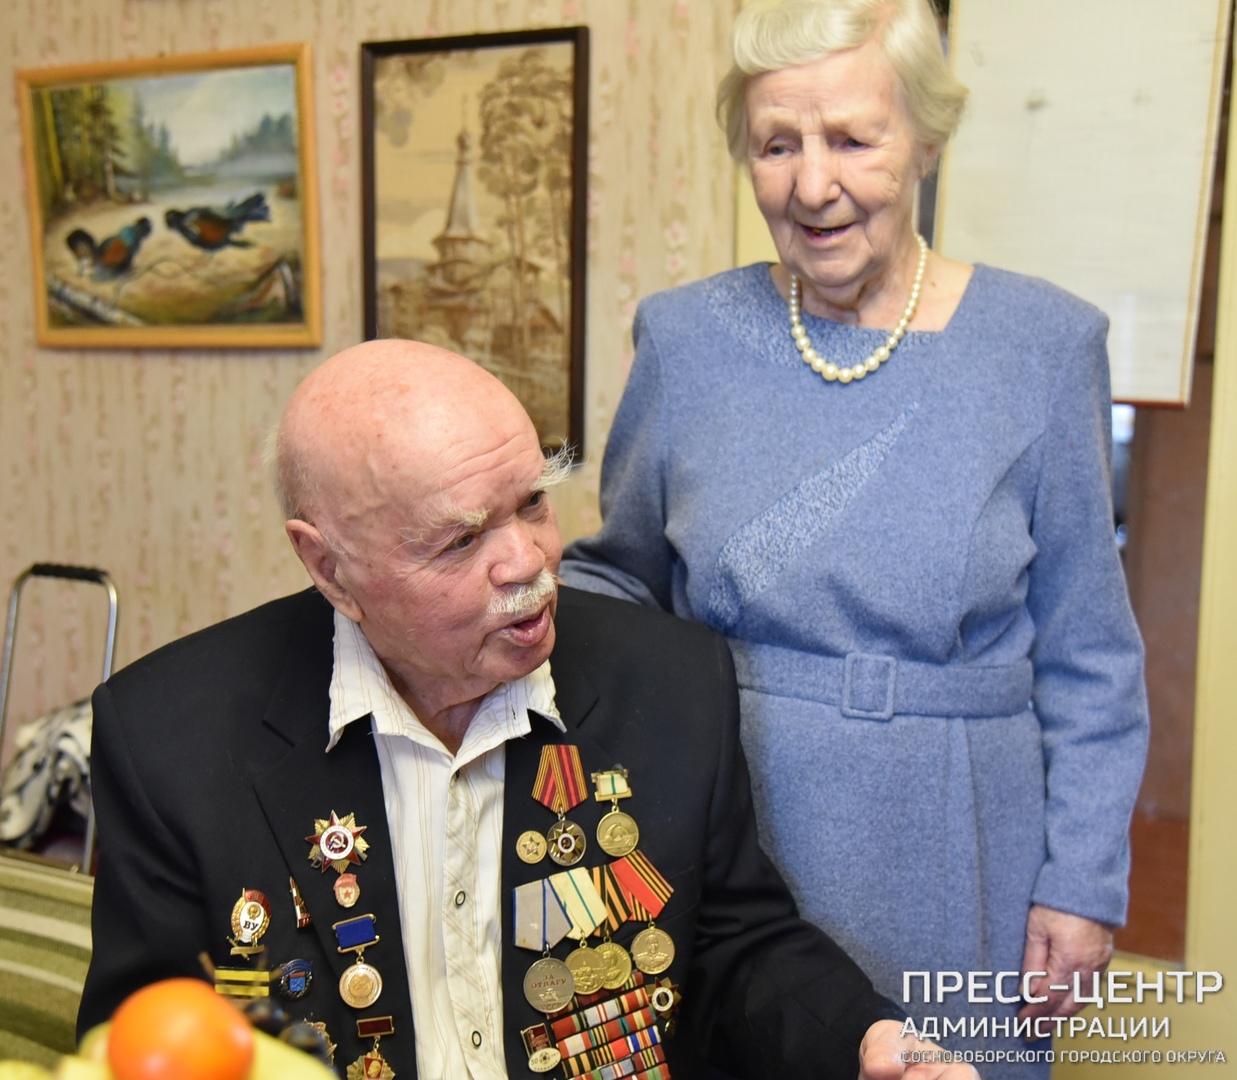 Юбилей настоящего Победителя. Ветерану войны Юрию Александровичу Ермошину - 95 лет